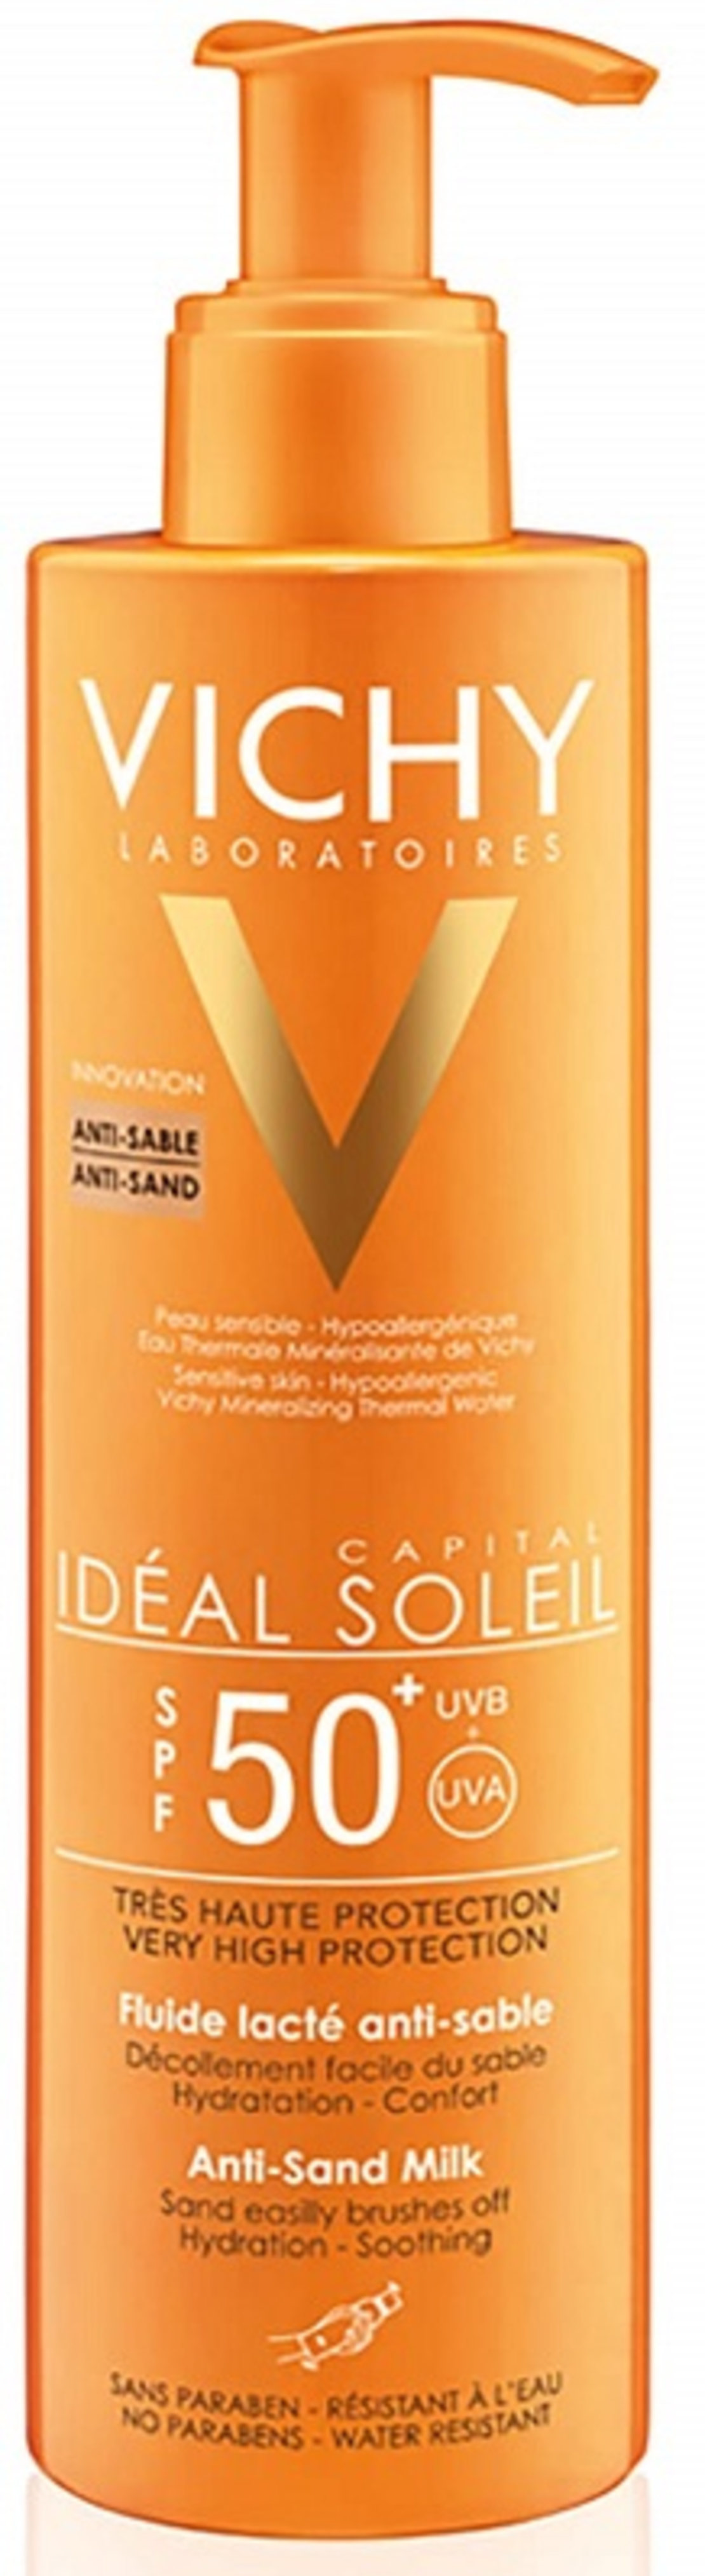 וישי - אידיאל סוליי תחליב הגנה דוחה חול Vichy Ideal Soleil Anti-Sand Milk